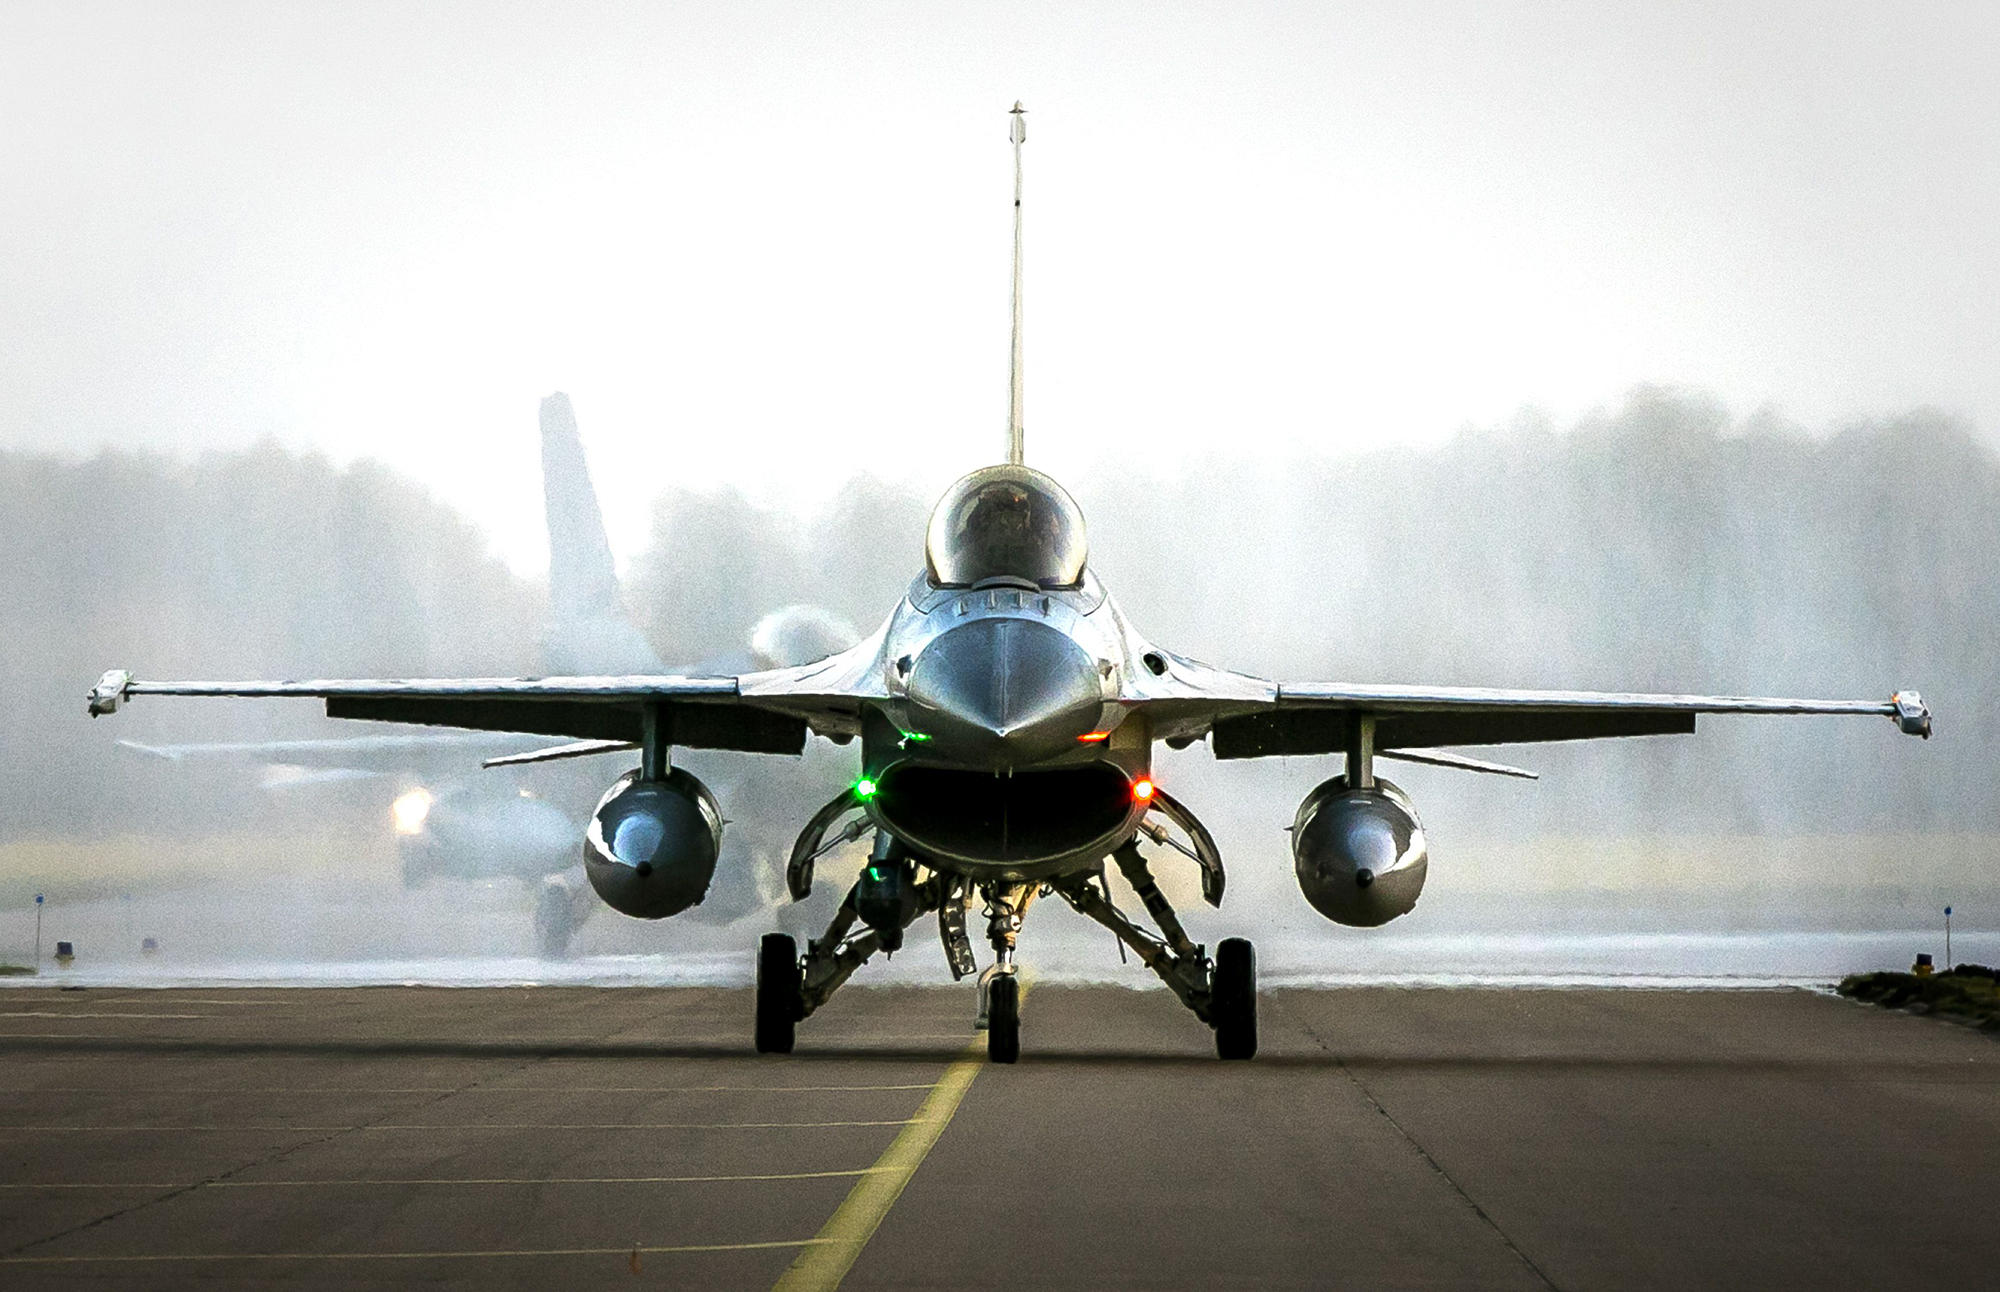 Ukraine asks the Netherlands for F-16 fighter jets